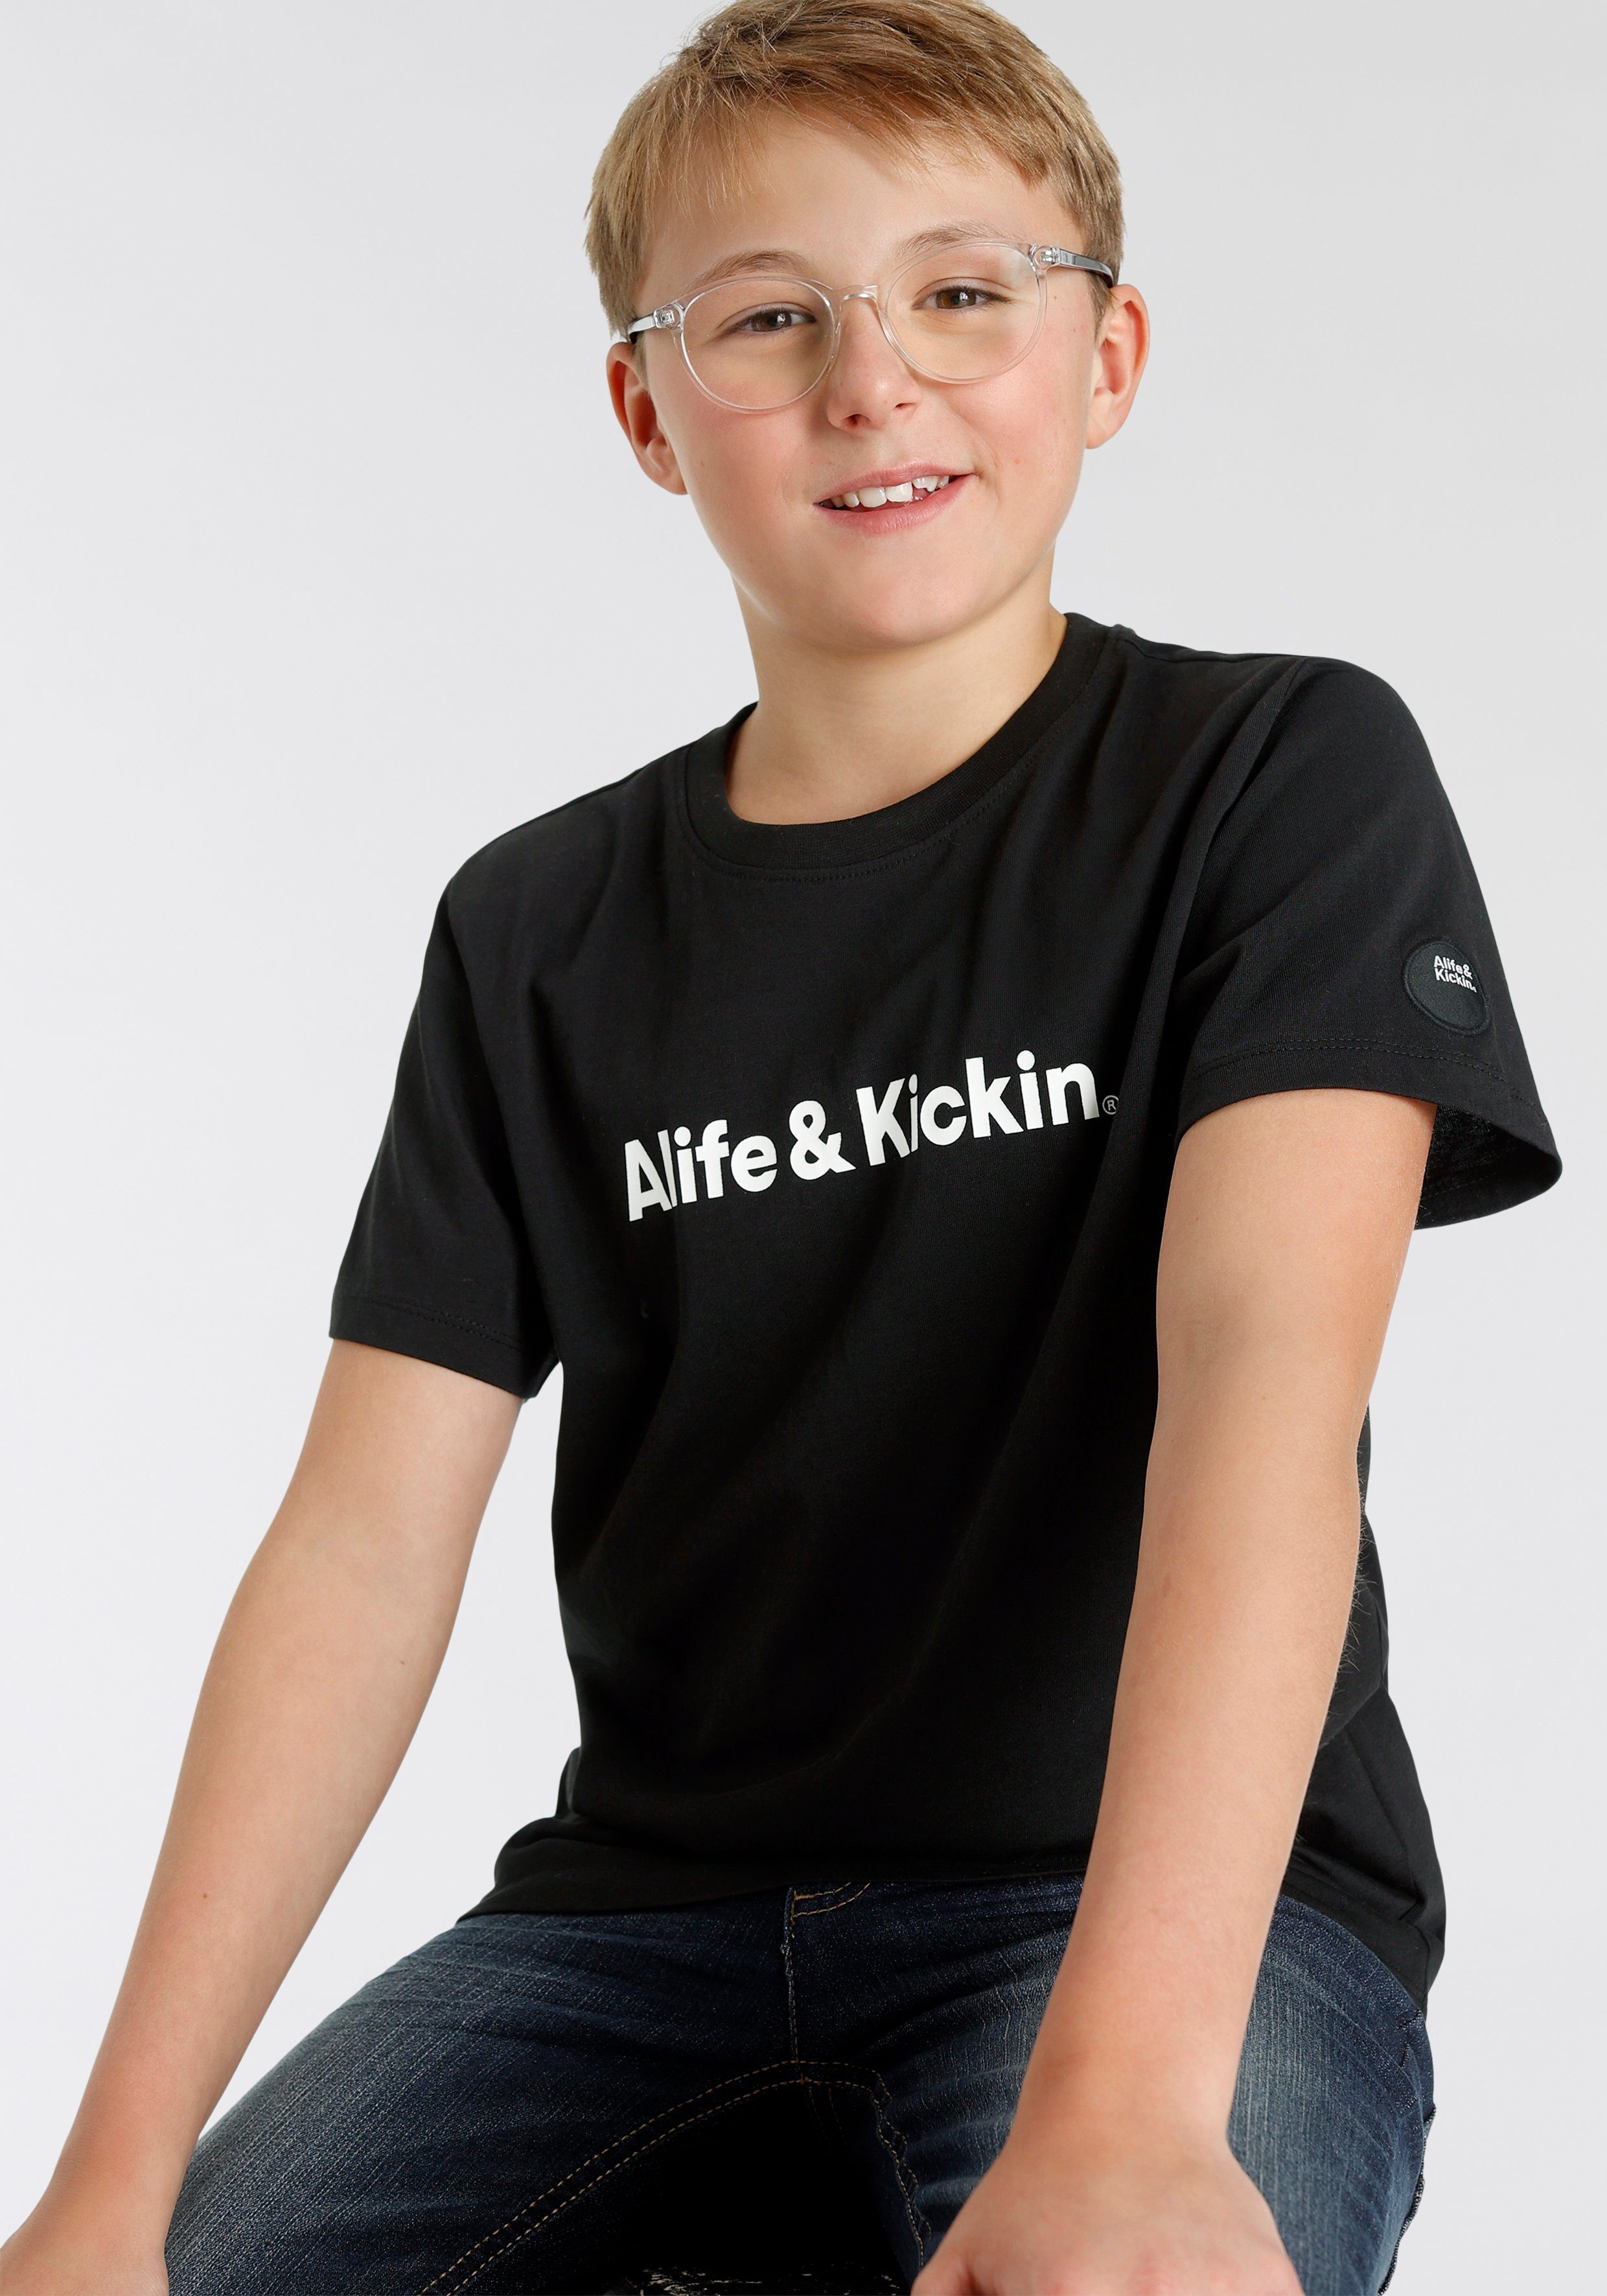 Alife&Kickin Kids. NEUE für Alife Logo-Print, MARKE! T-Shirt & Kickin